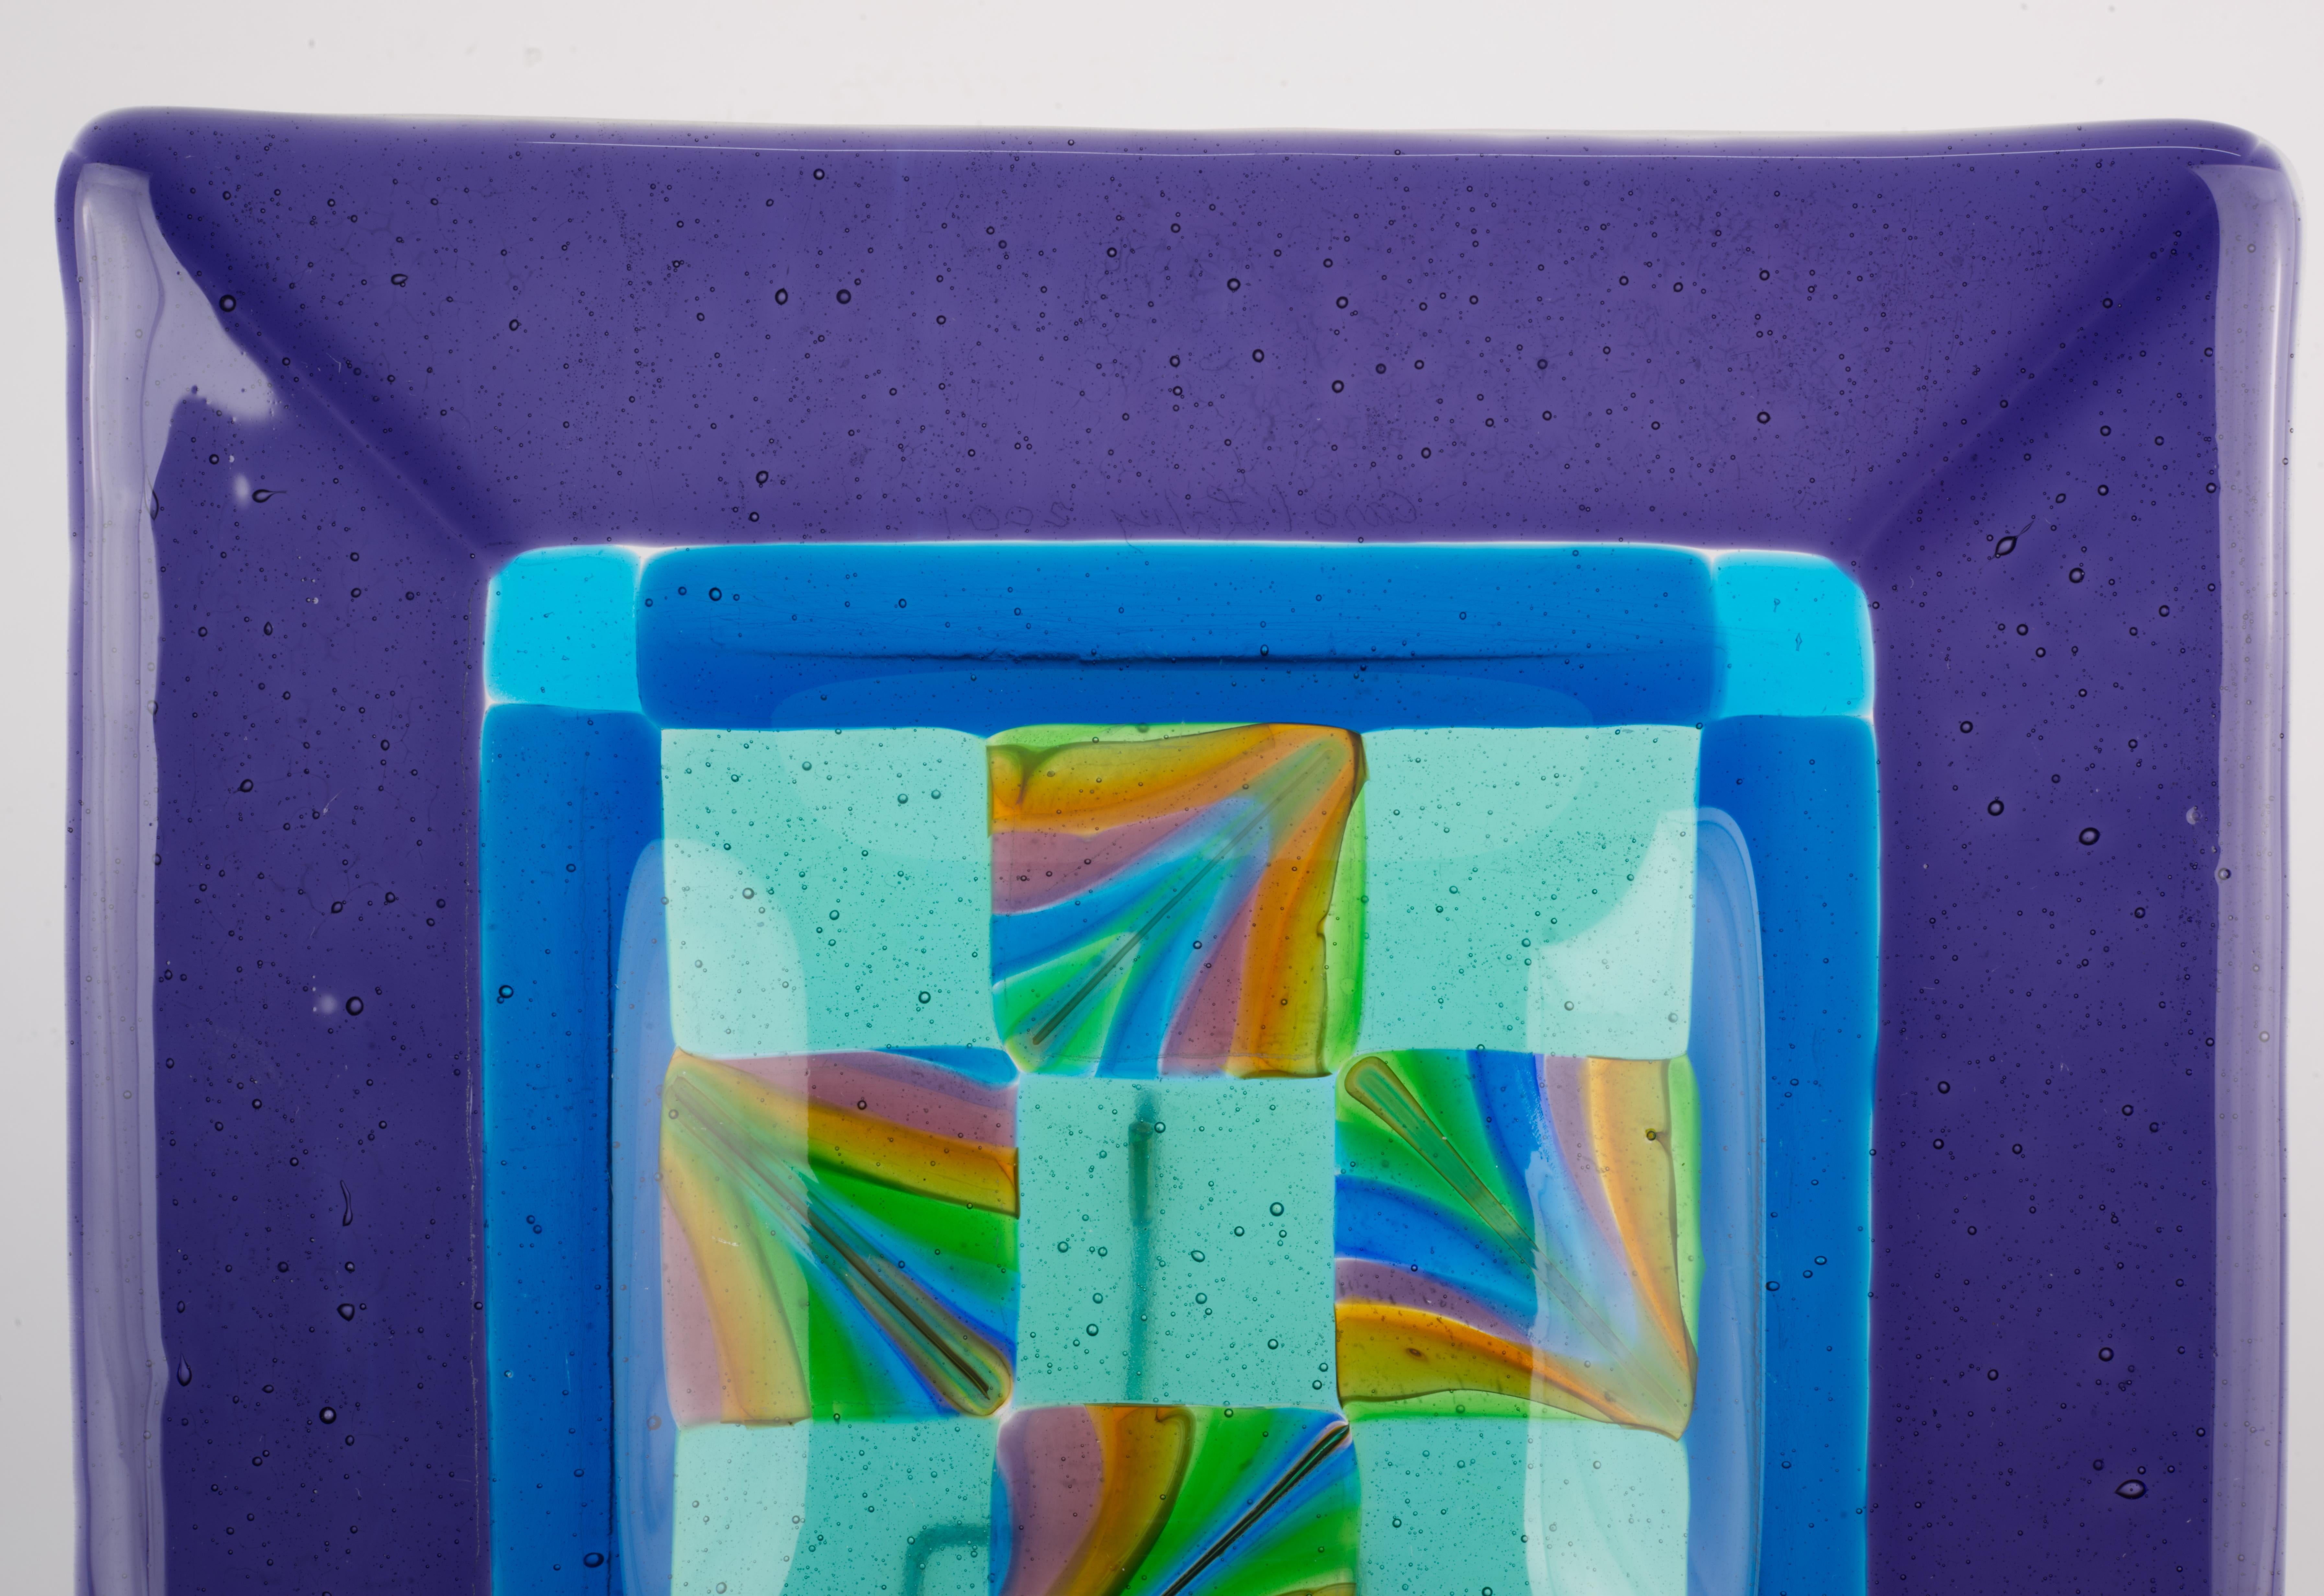  Viereckige Videopoche oder Aschenbecher aus geschmolzenem Glas mit breitem Rand in tiefem Amethystviolett und komplexer zentraler Schale mit Schachbrettmuster in der Mitte, die von einem blauen Band umgeben ist. Alle Bereiche des durchgefärbten